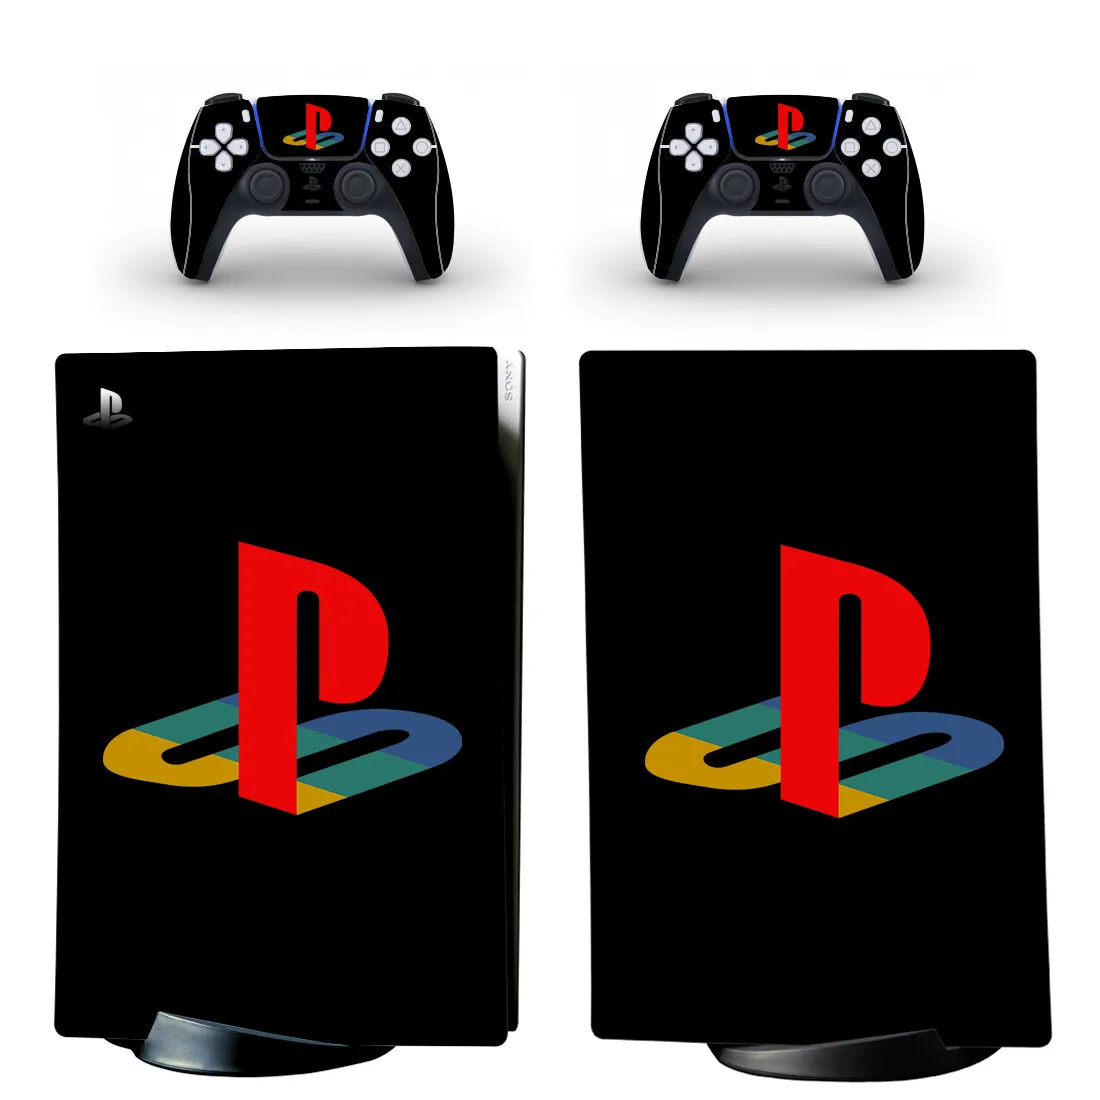 

Символ PS5 цифровой издание кожи Стикеры наклейка кожного покрова для Игровые приставки 5 консоли и контроллеры PS5 кожи Стикеры винил